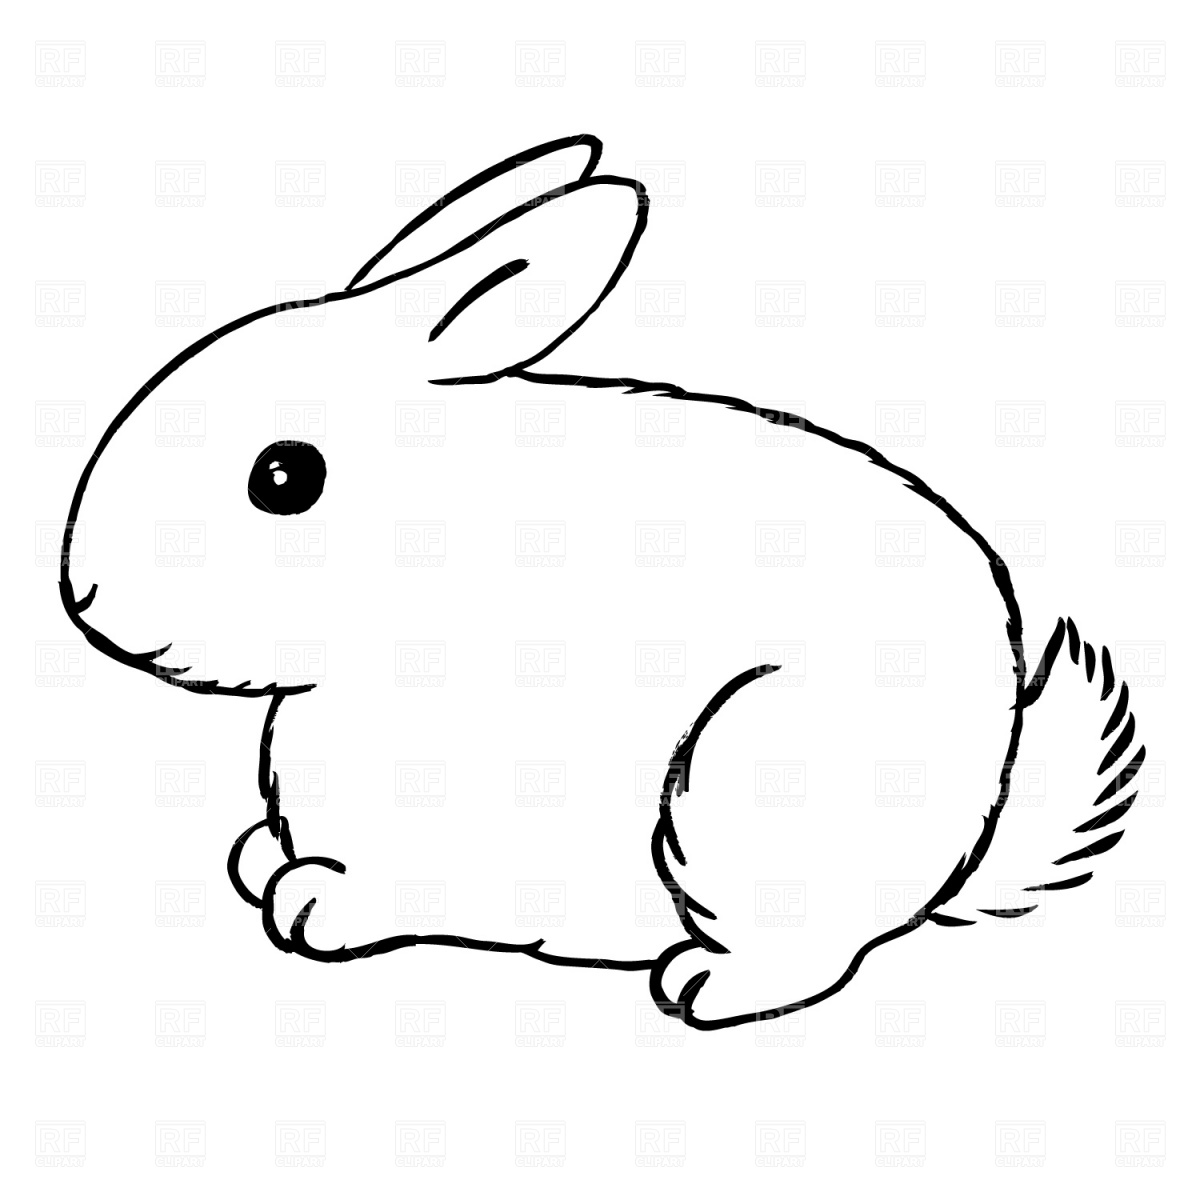 rabbit cartoon black and white